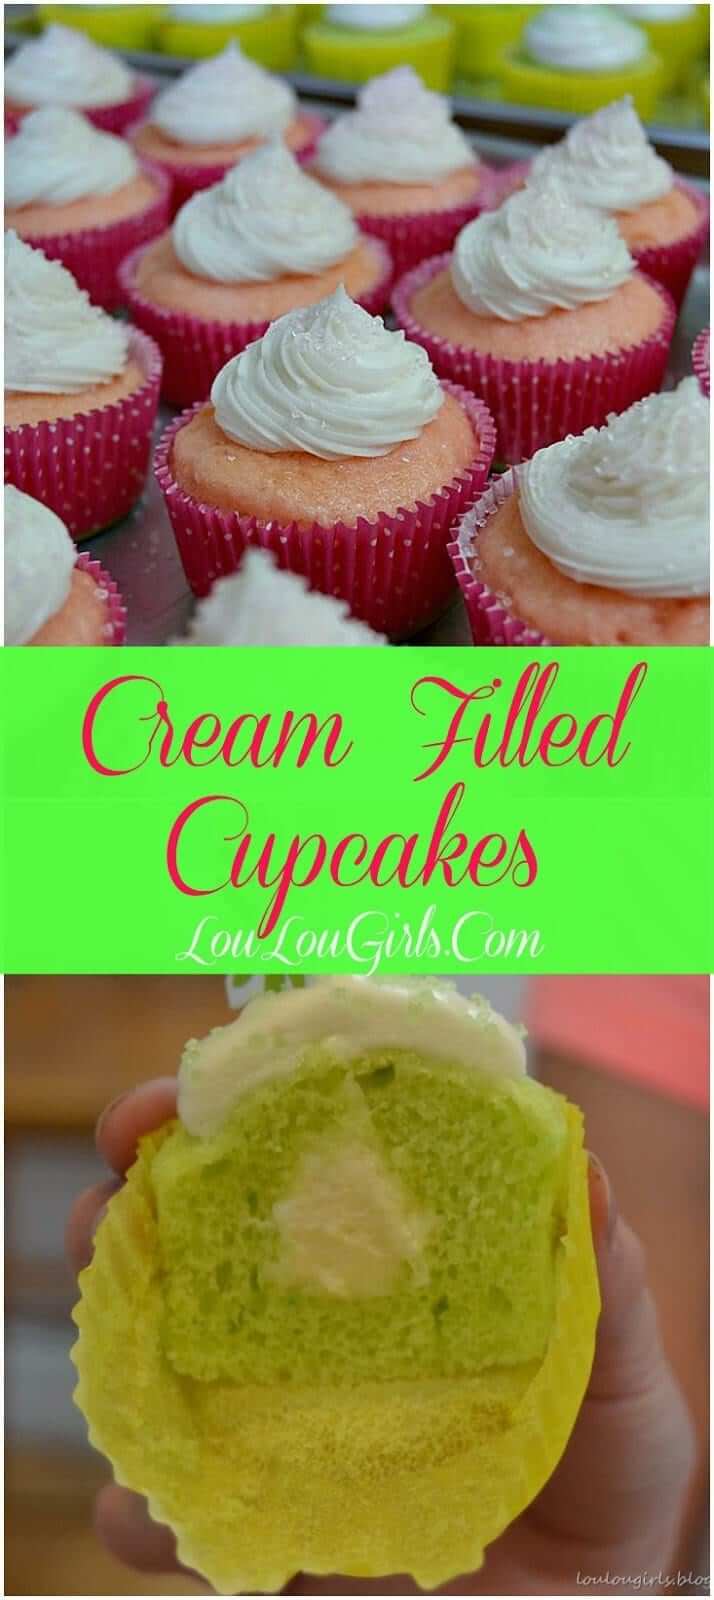 Cream Filled Cupcakes Recipe - Lou Lou Girls